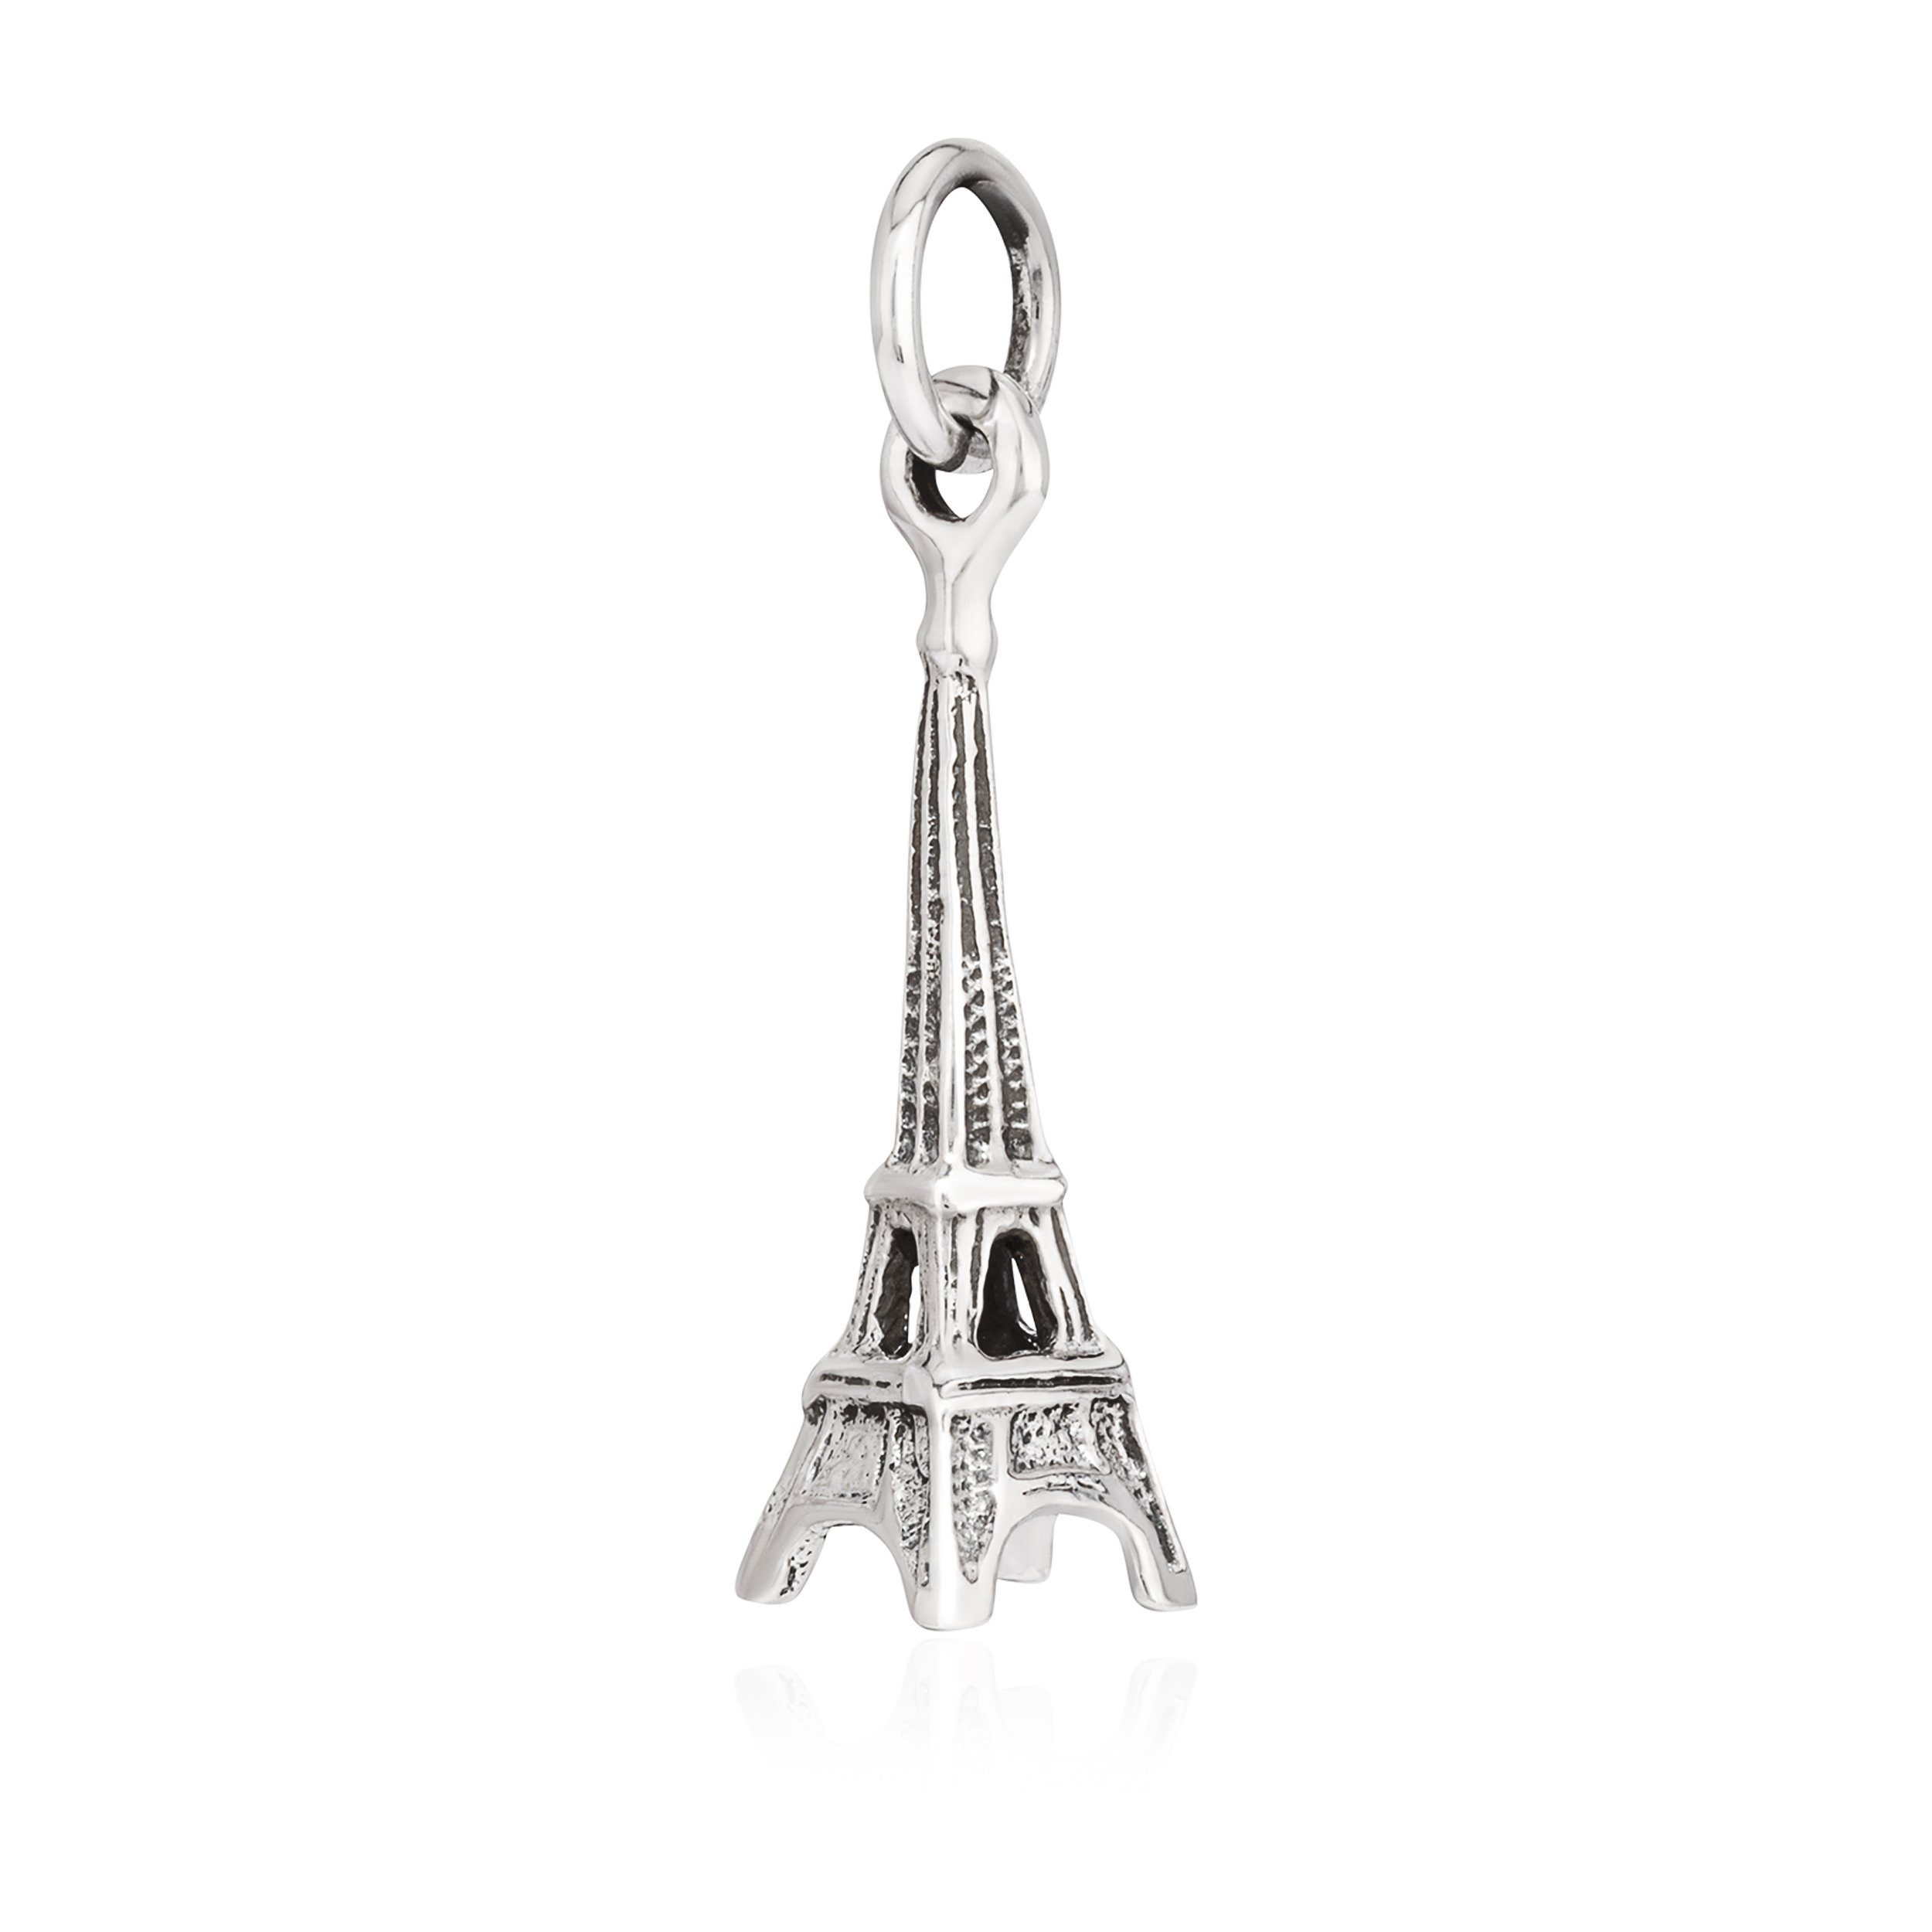 NKlaus Kettenanhänger Kettenanhänger Eiffelturm 925 Silber 21x7mm Paris, 925 Silber rhodiniert